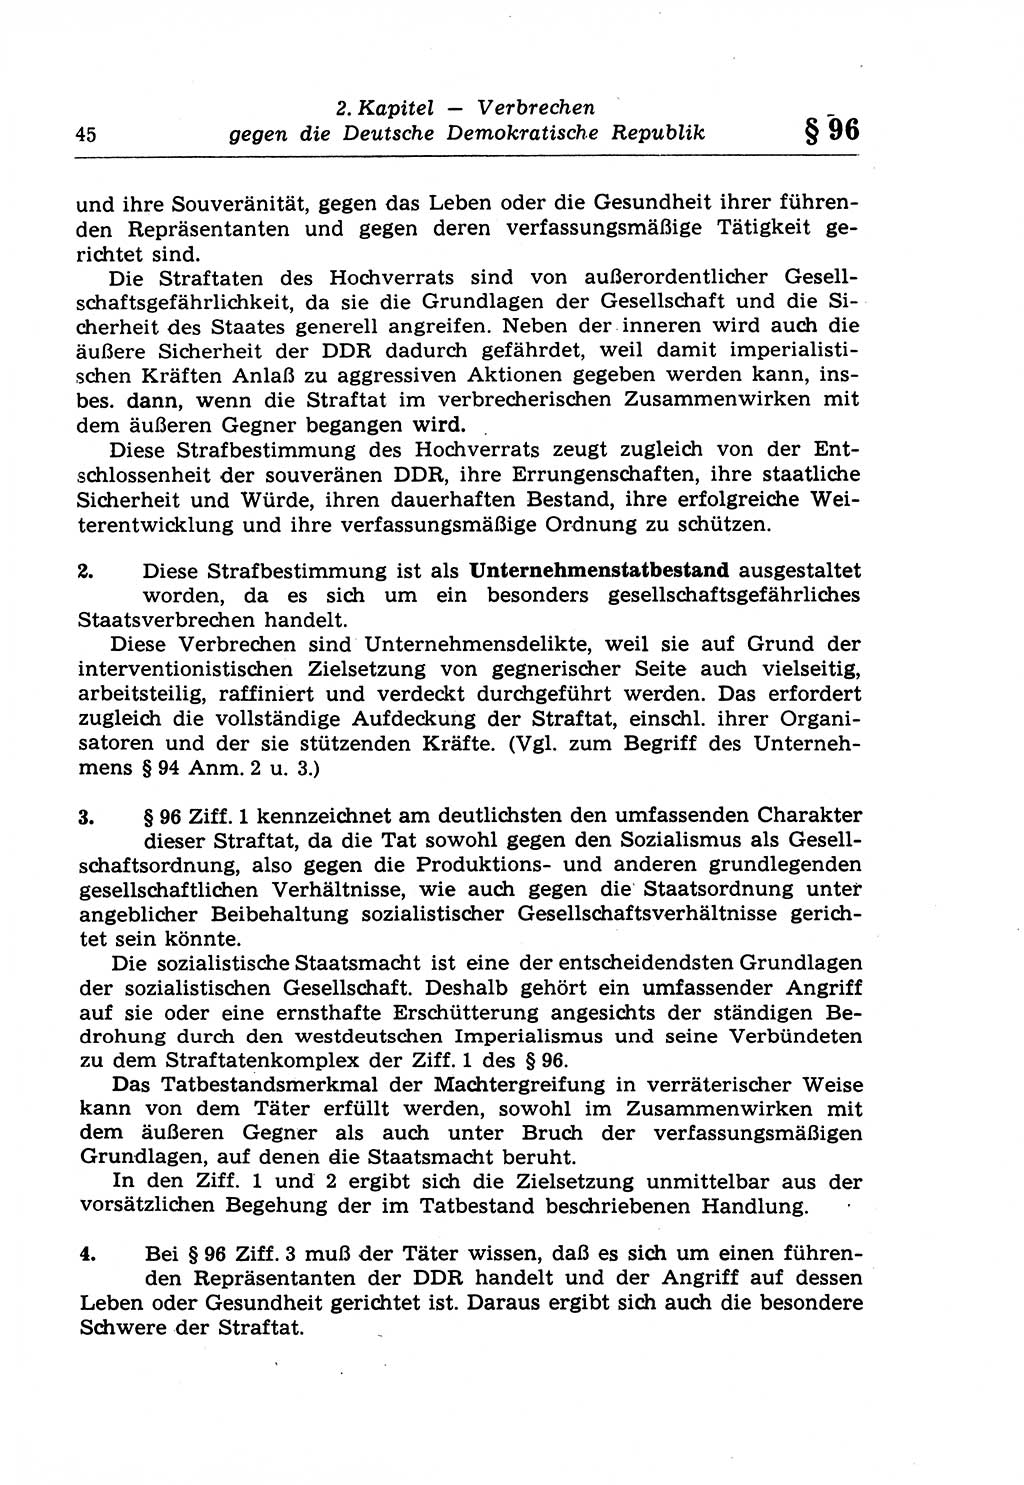 Strafrecht der Deutschen Demokratischen Republik (DDR), Lehrkommentar zum Strafgesetzbuch (StGB), Besonderer Teil 1970, Seite 45 (Strafr. DDR Lehrkomm. StGB BT 1970, S. 45)